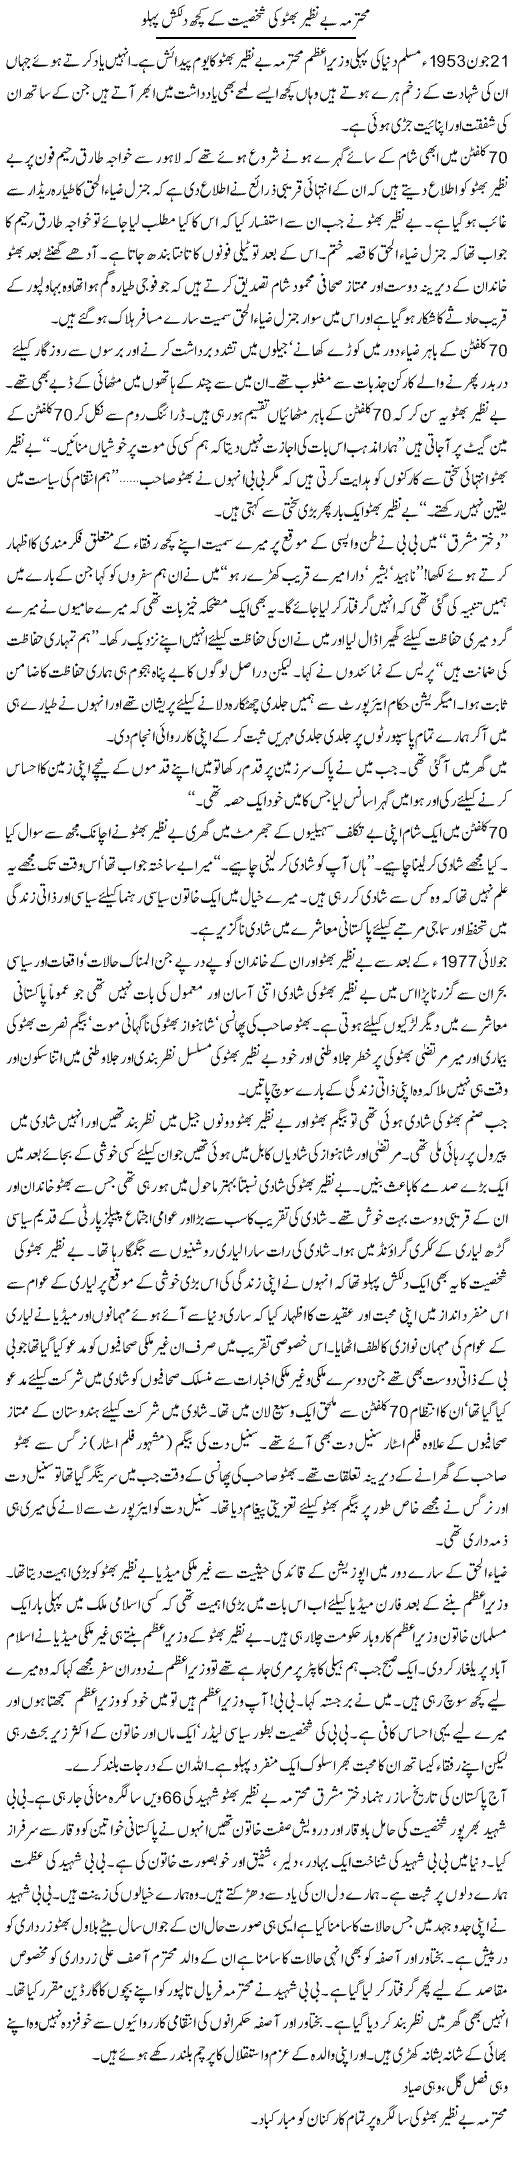 Mohtarma Benazir Bhutto Ki Shakhsiyat Ke Kuch Dilkash Pehlu | Bashir Riaz | Daily Urdu Columns